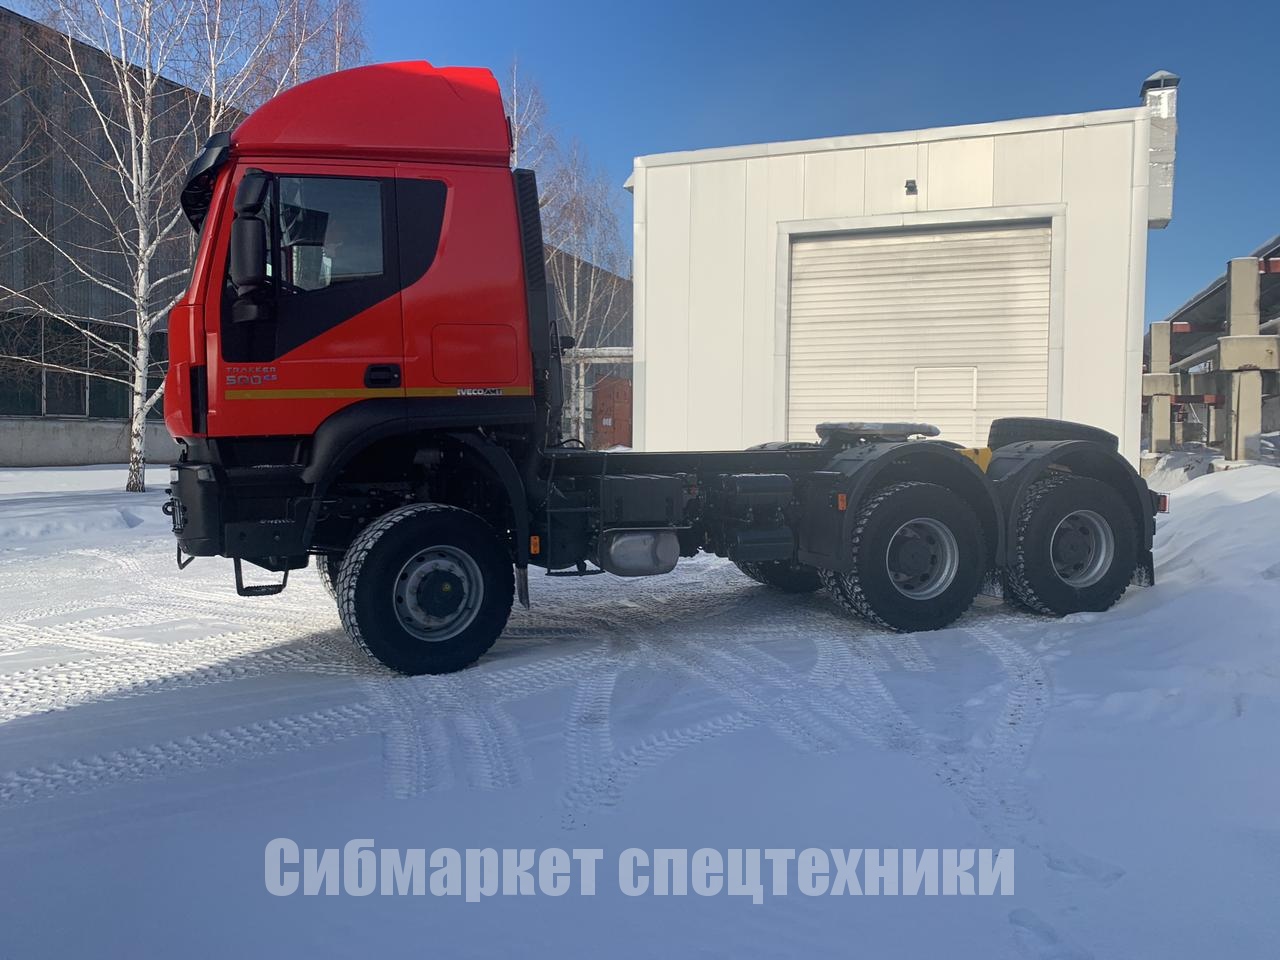 ПреКРАСНЫЙ тягач IVECO-AMT 633910 для Иркутской области